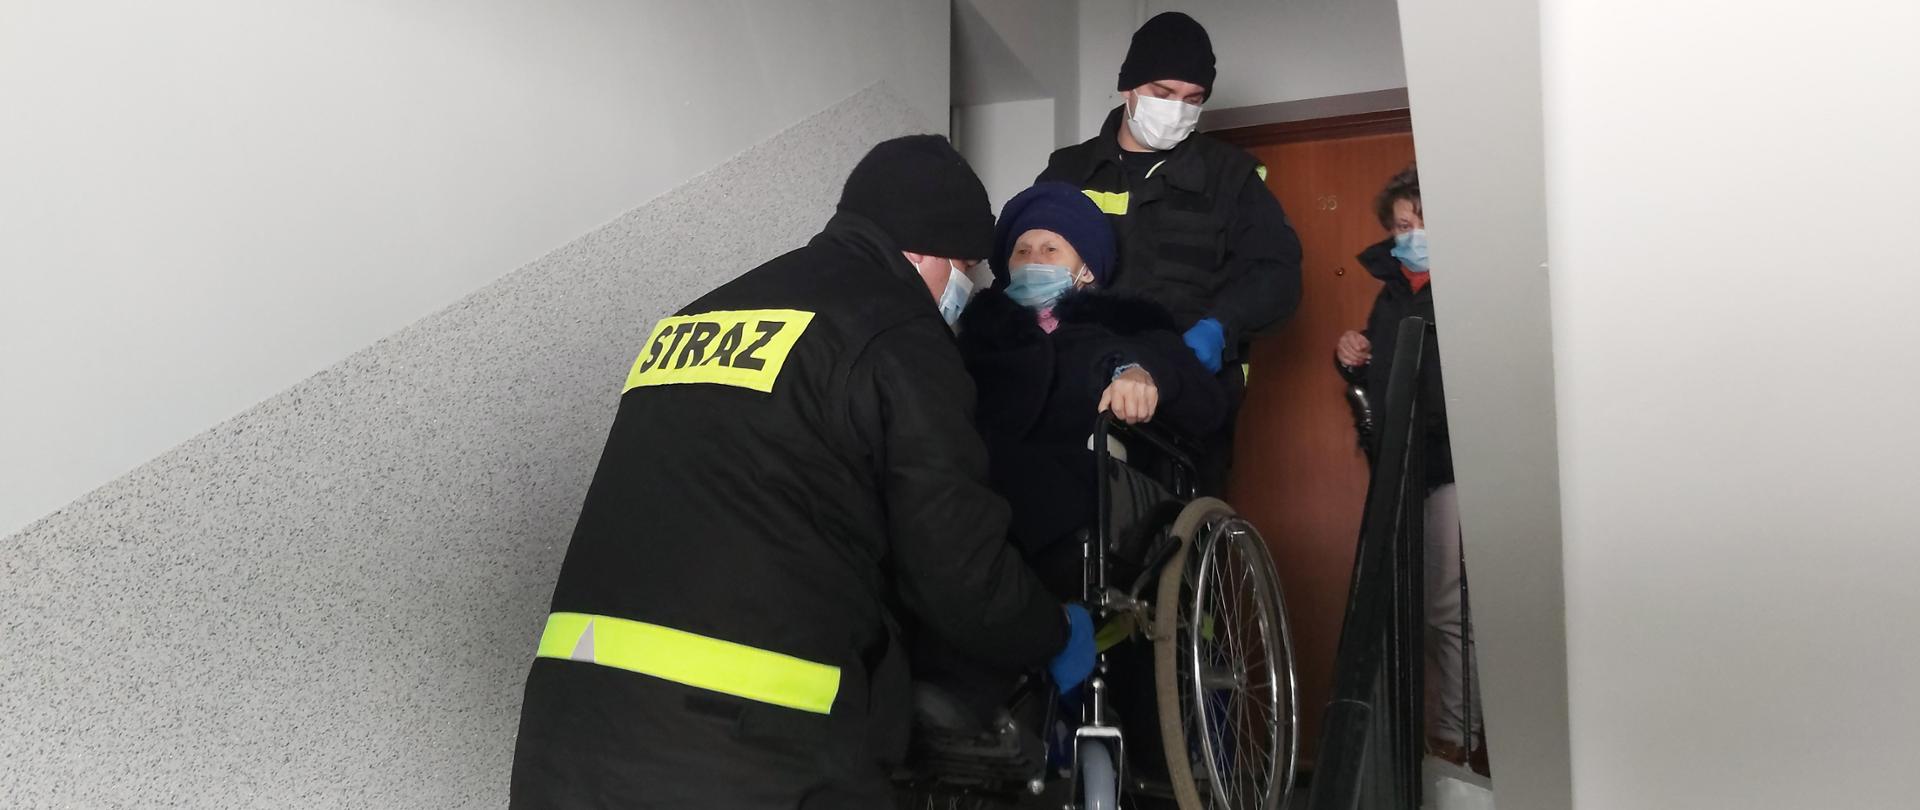 Dwóch strażaków znosi osobę na wózku inwalidzkim po schodach. Wszyscy w maskach na twarzy